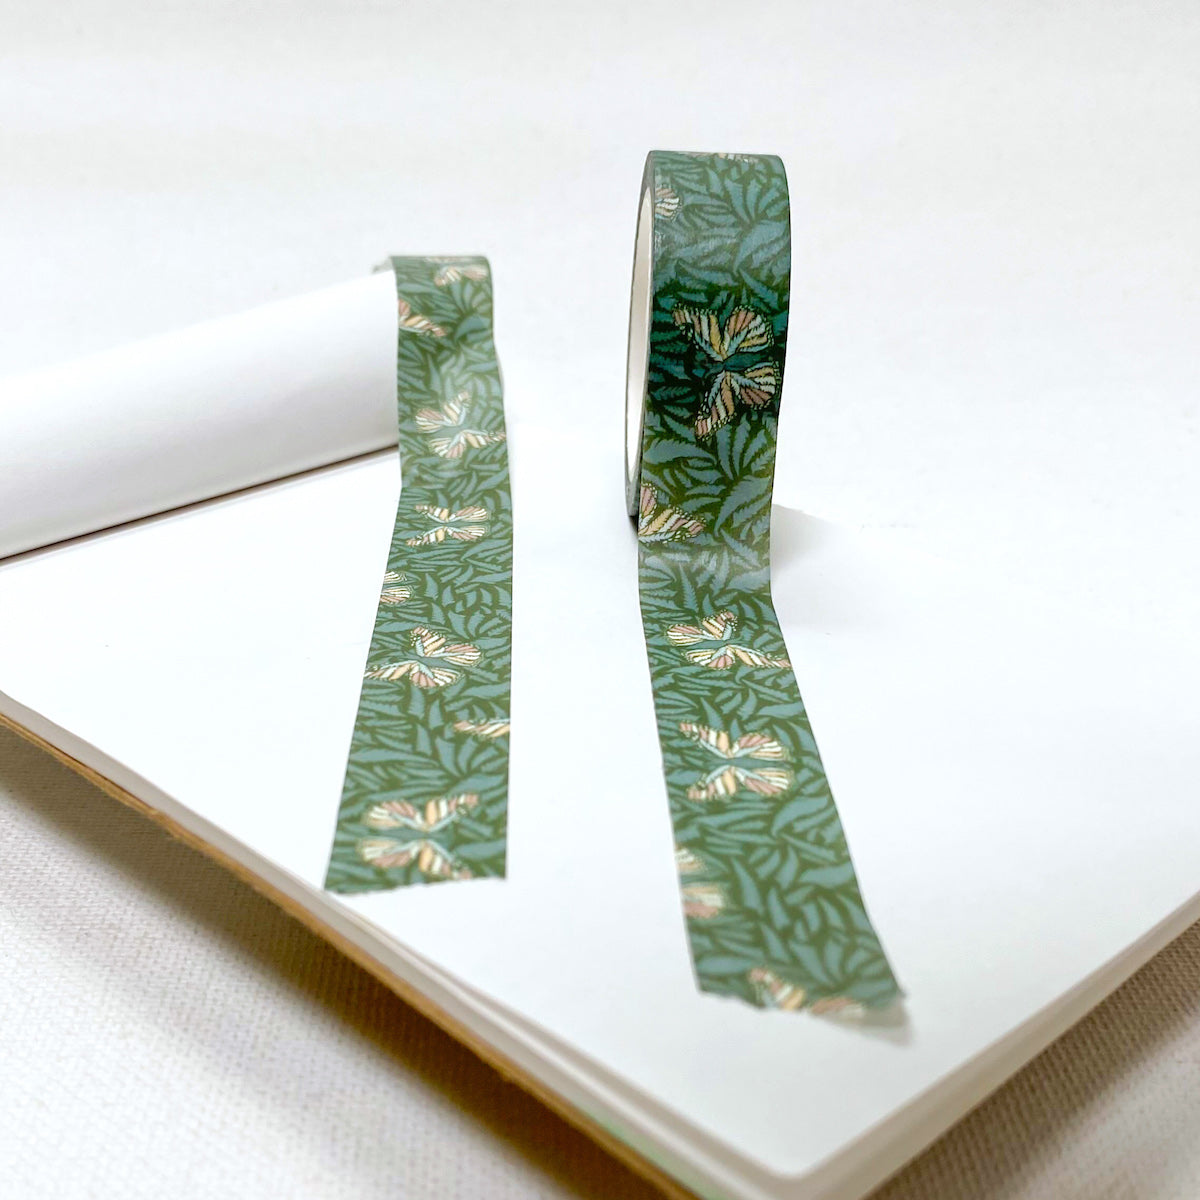 15mm x 10m Washi Tape - Palapalai Fern and Pulelehua Butterfly